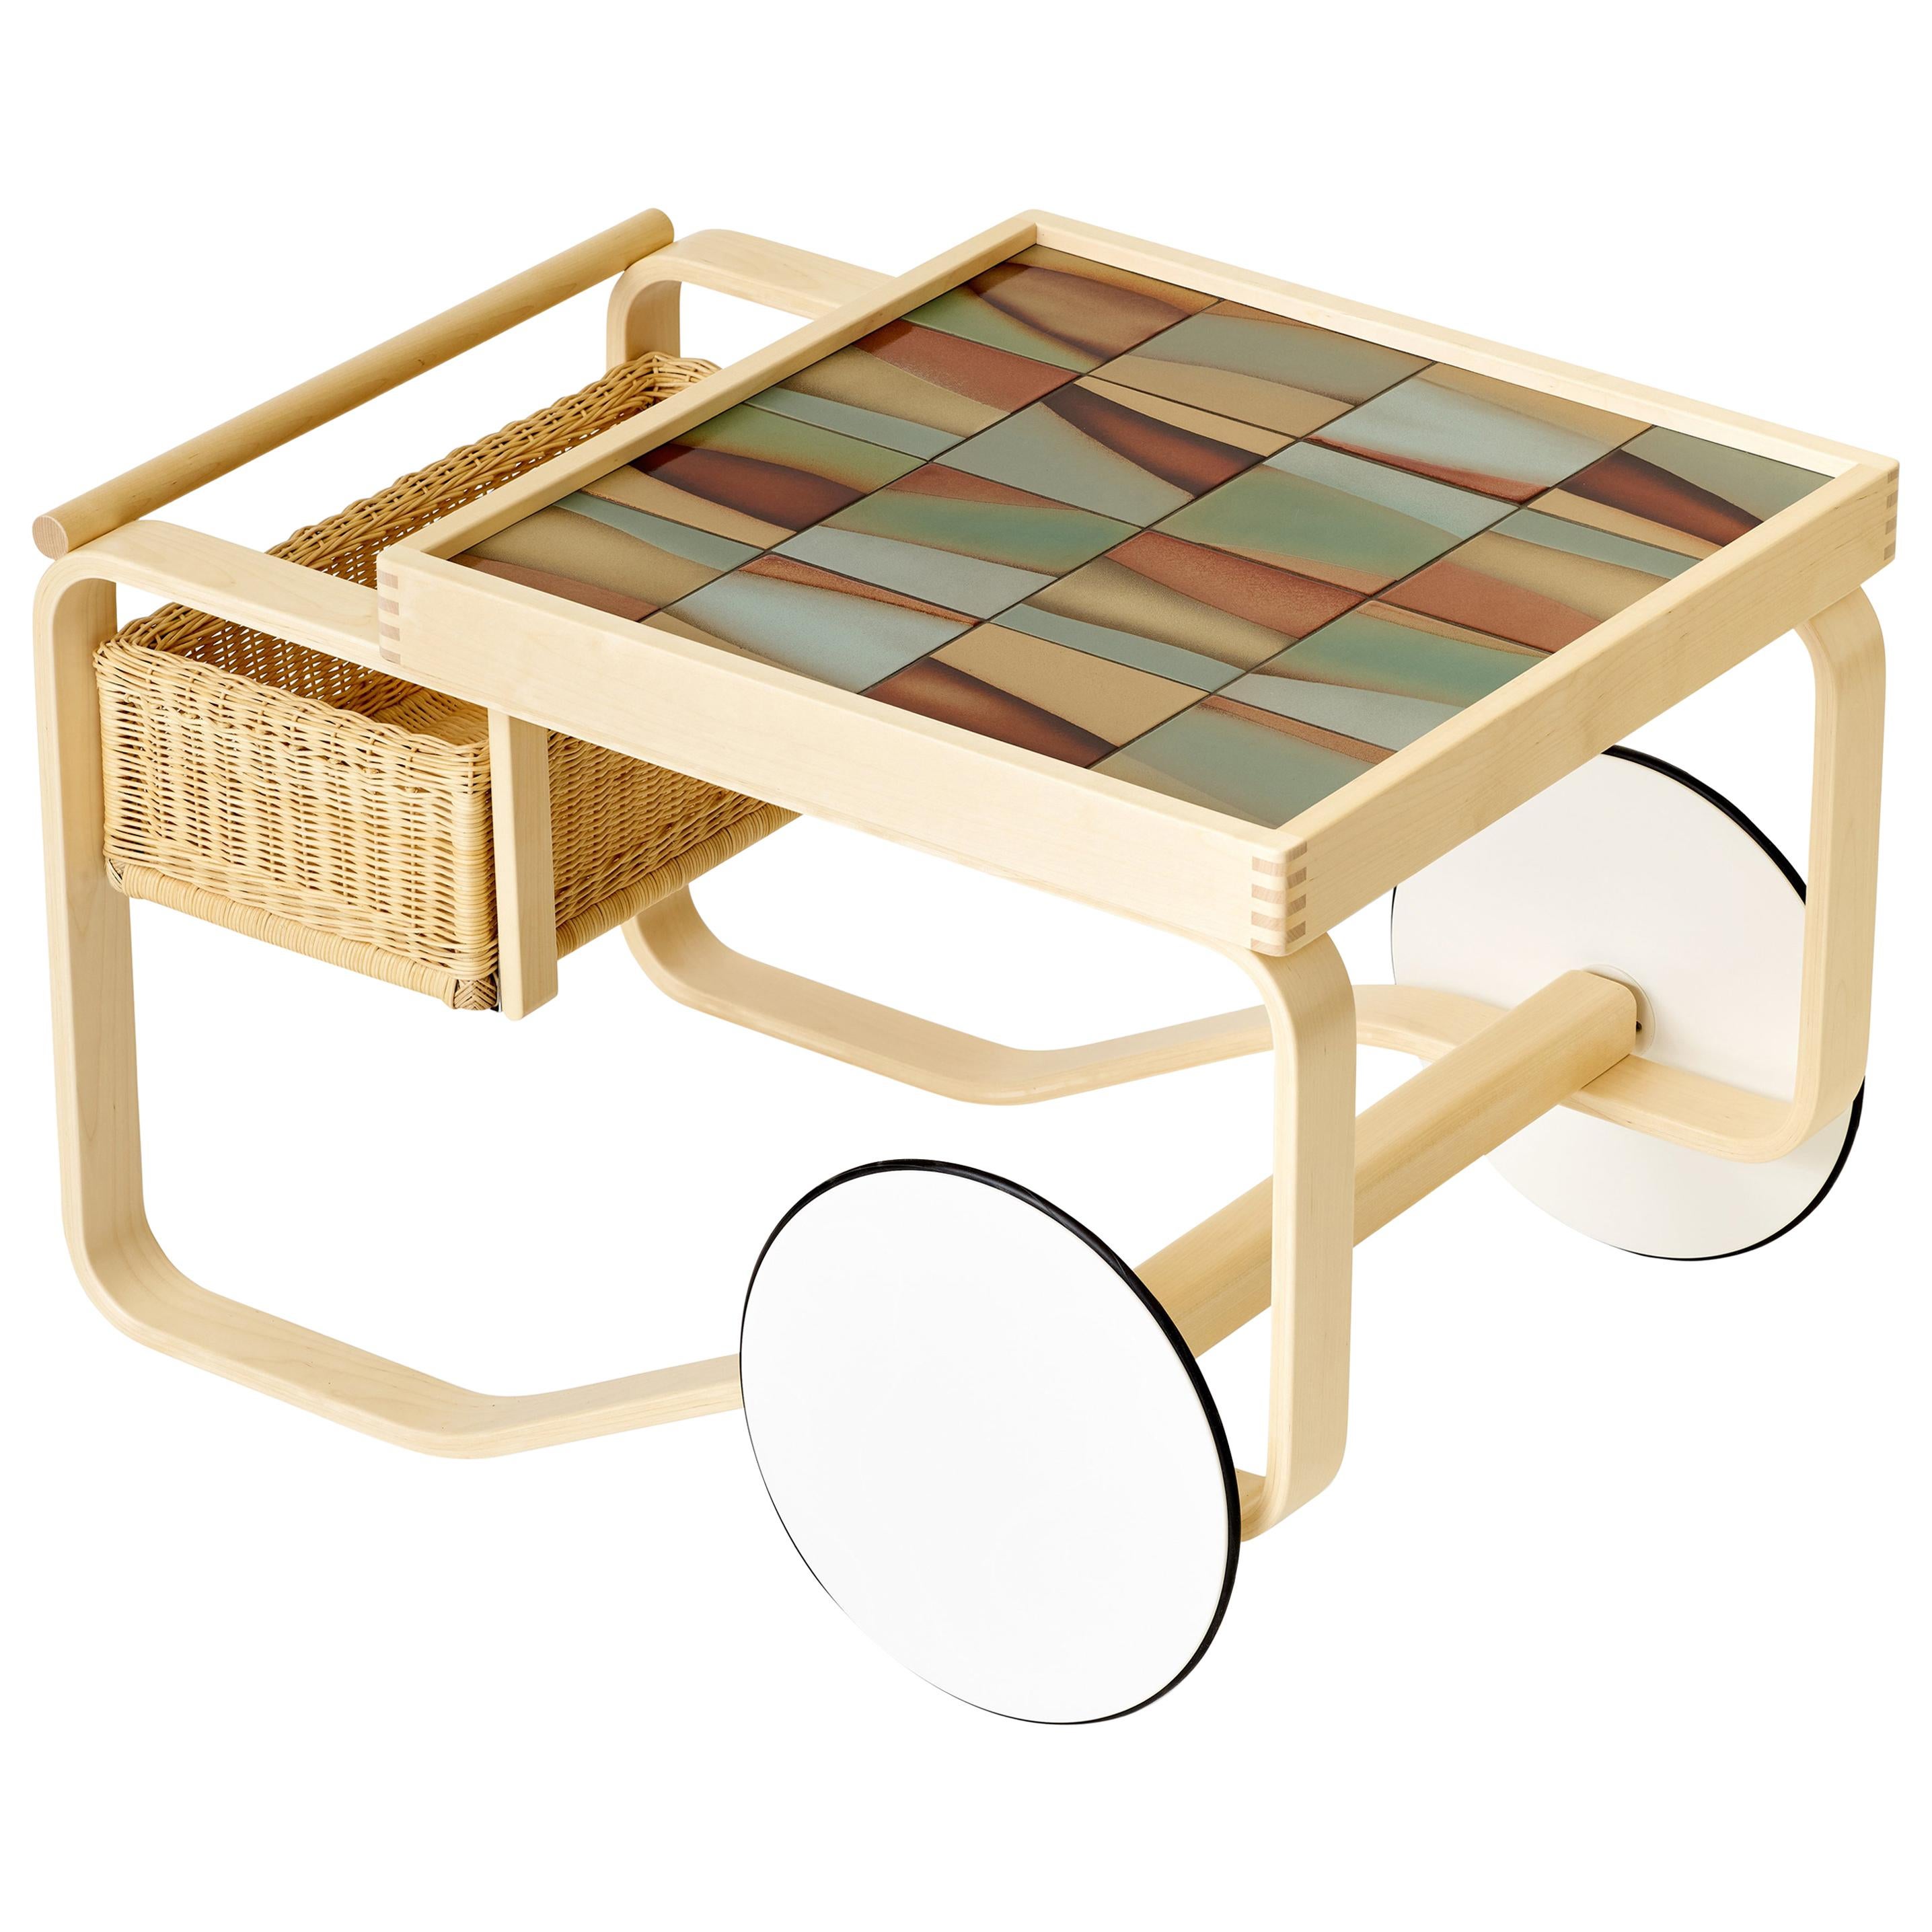 Limited Edition Alvar Aalto Tea Trolley 900 in Landscape by Artek + Heath For Sale